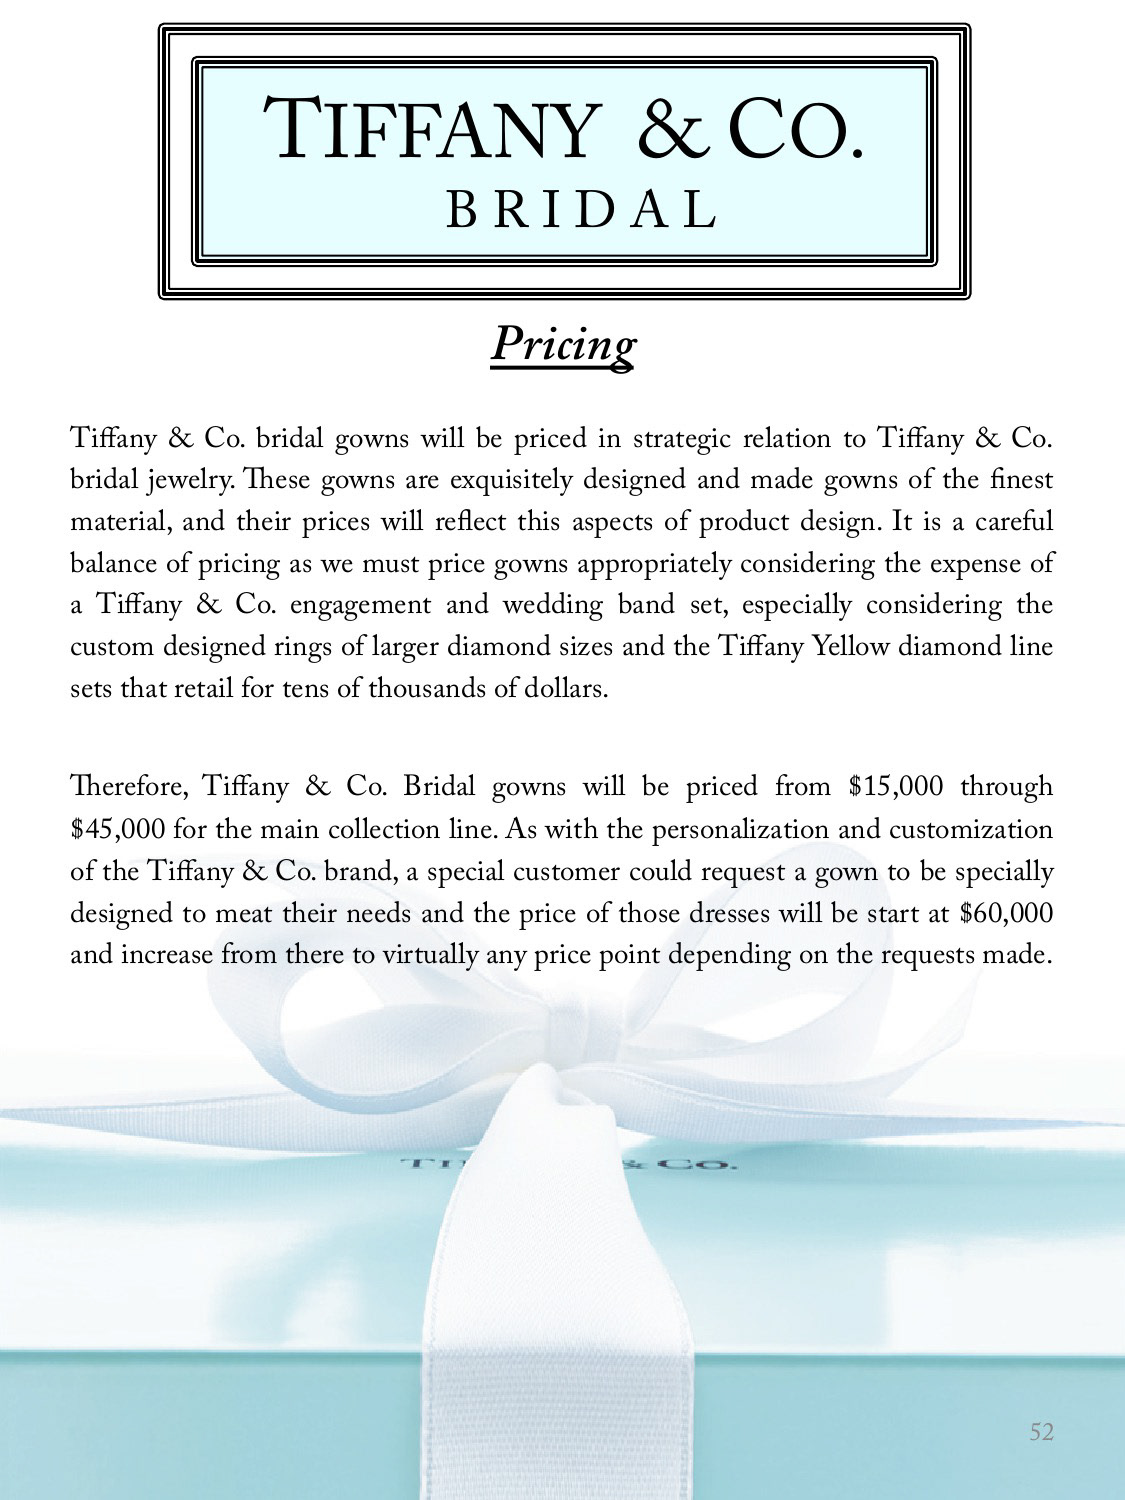 danamarieburmeister SCAD studentwork Tiffany&Co bridal luxury